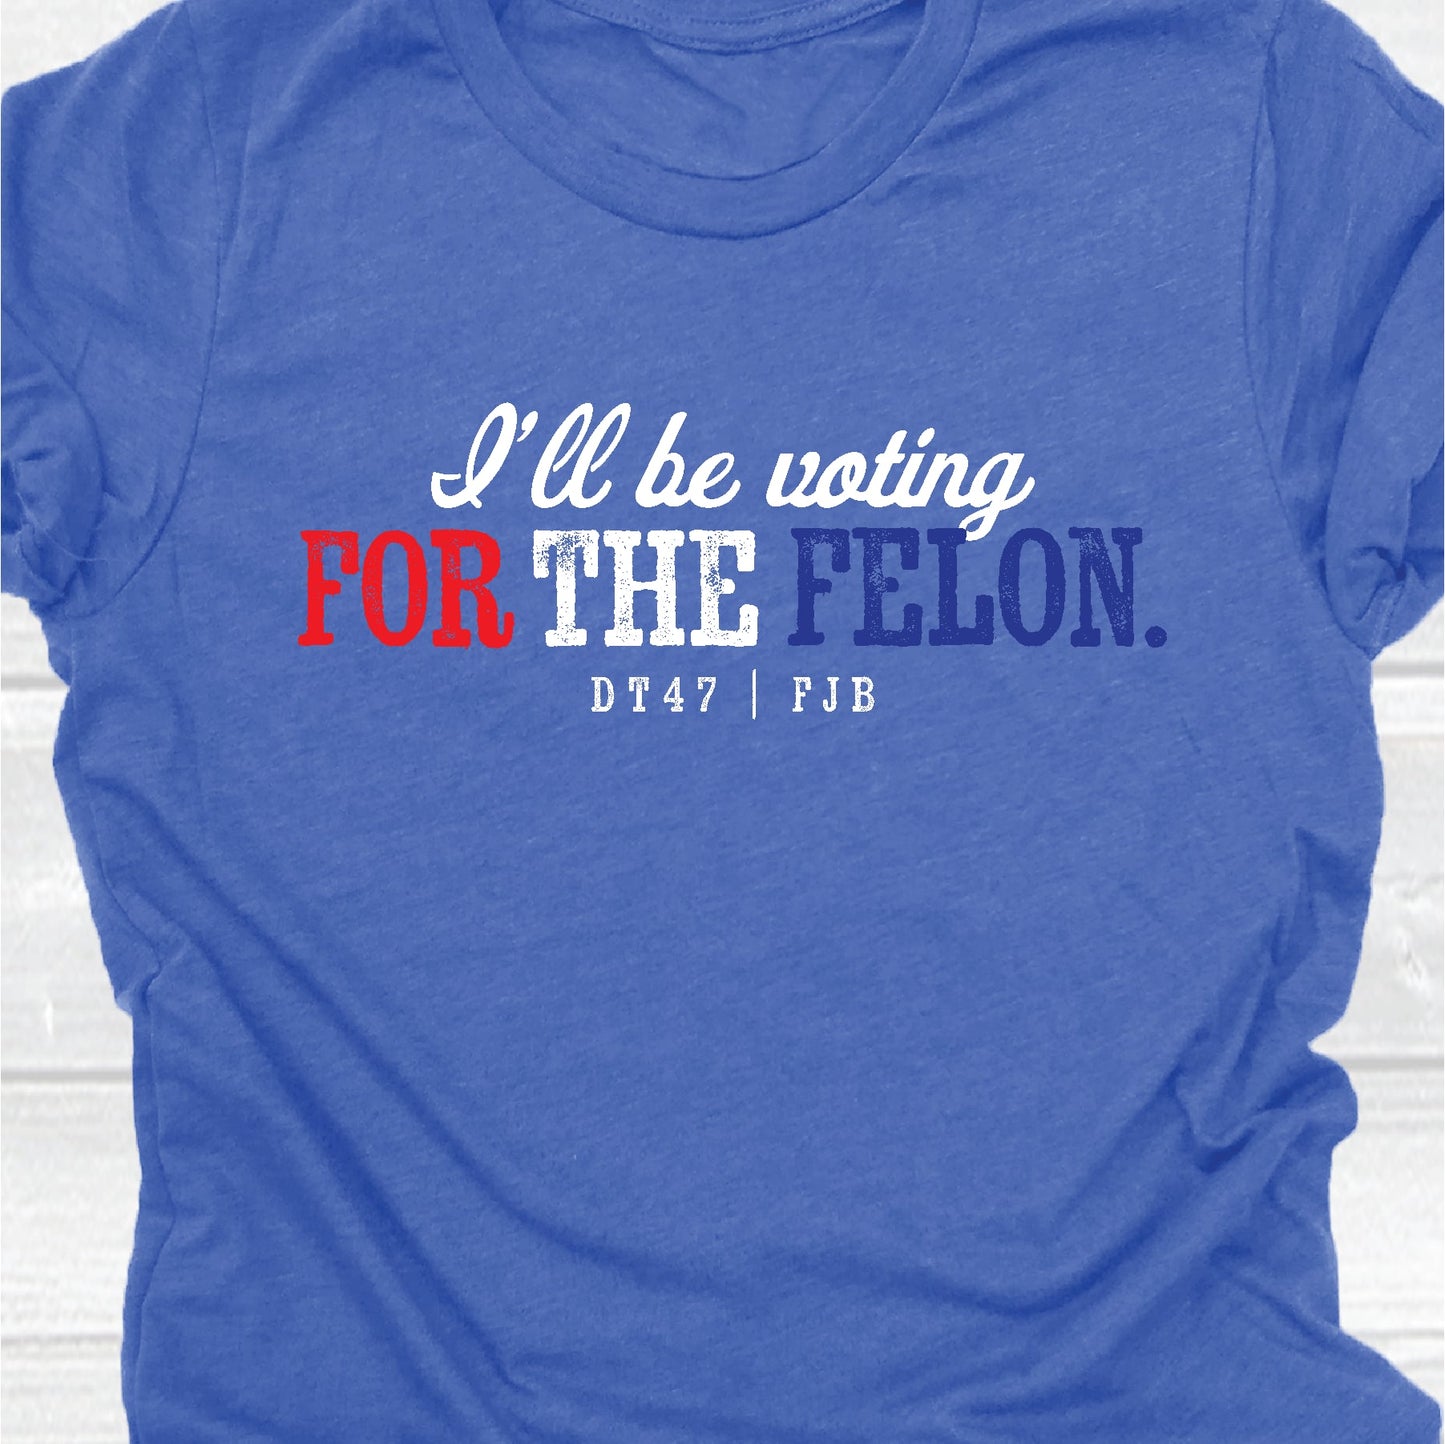 "I'll be voting for the felon" - Unisex T-shirt